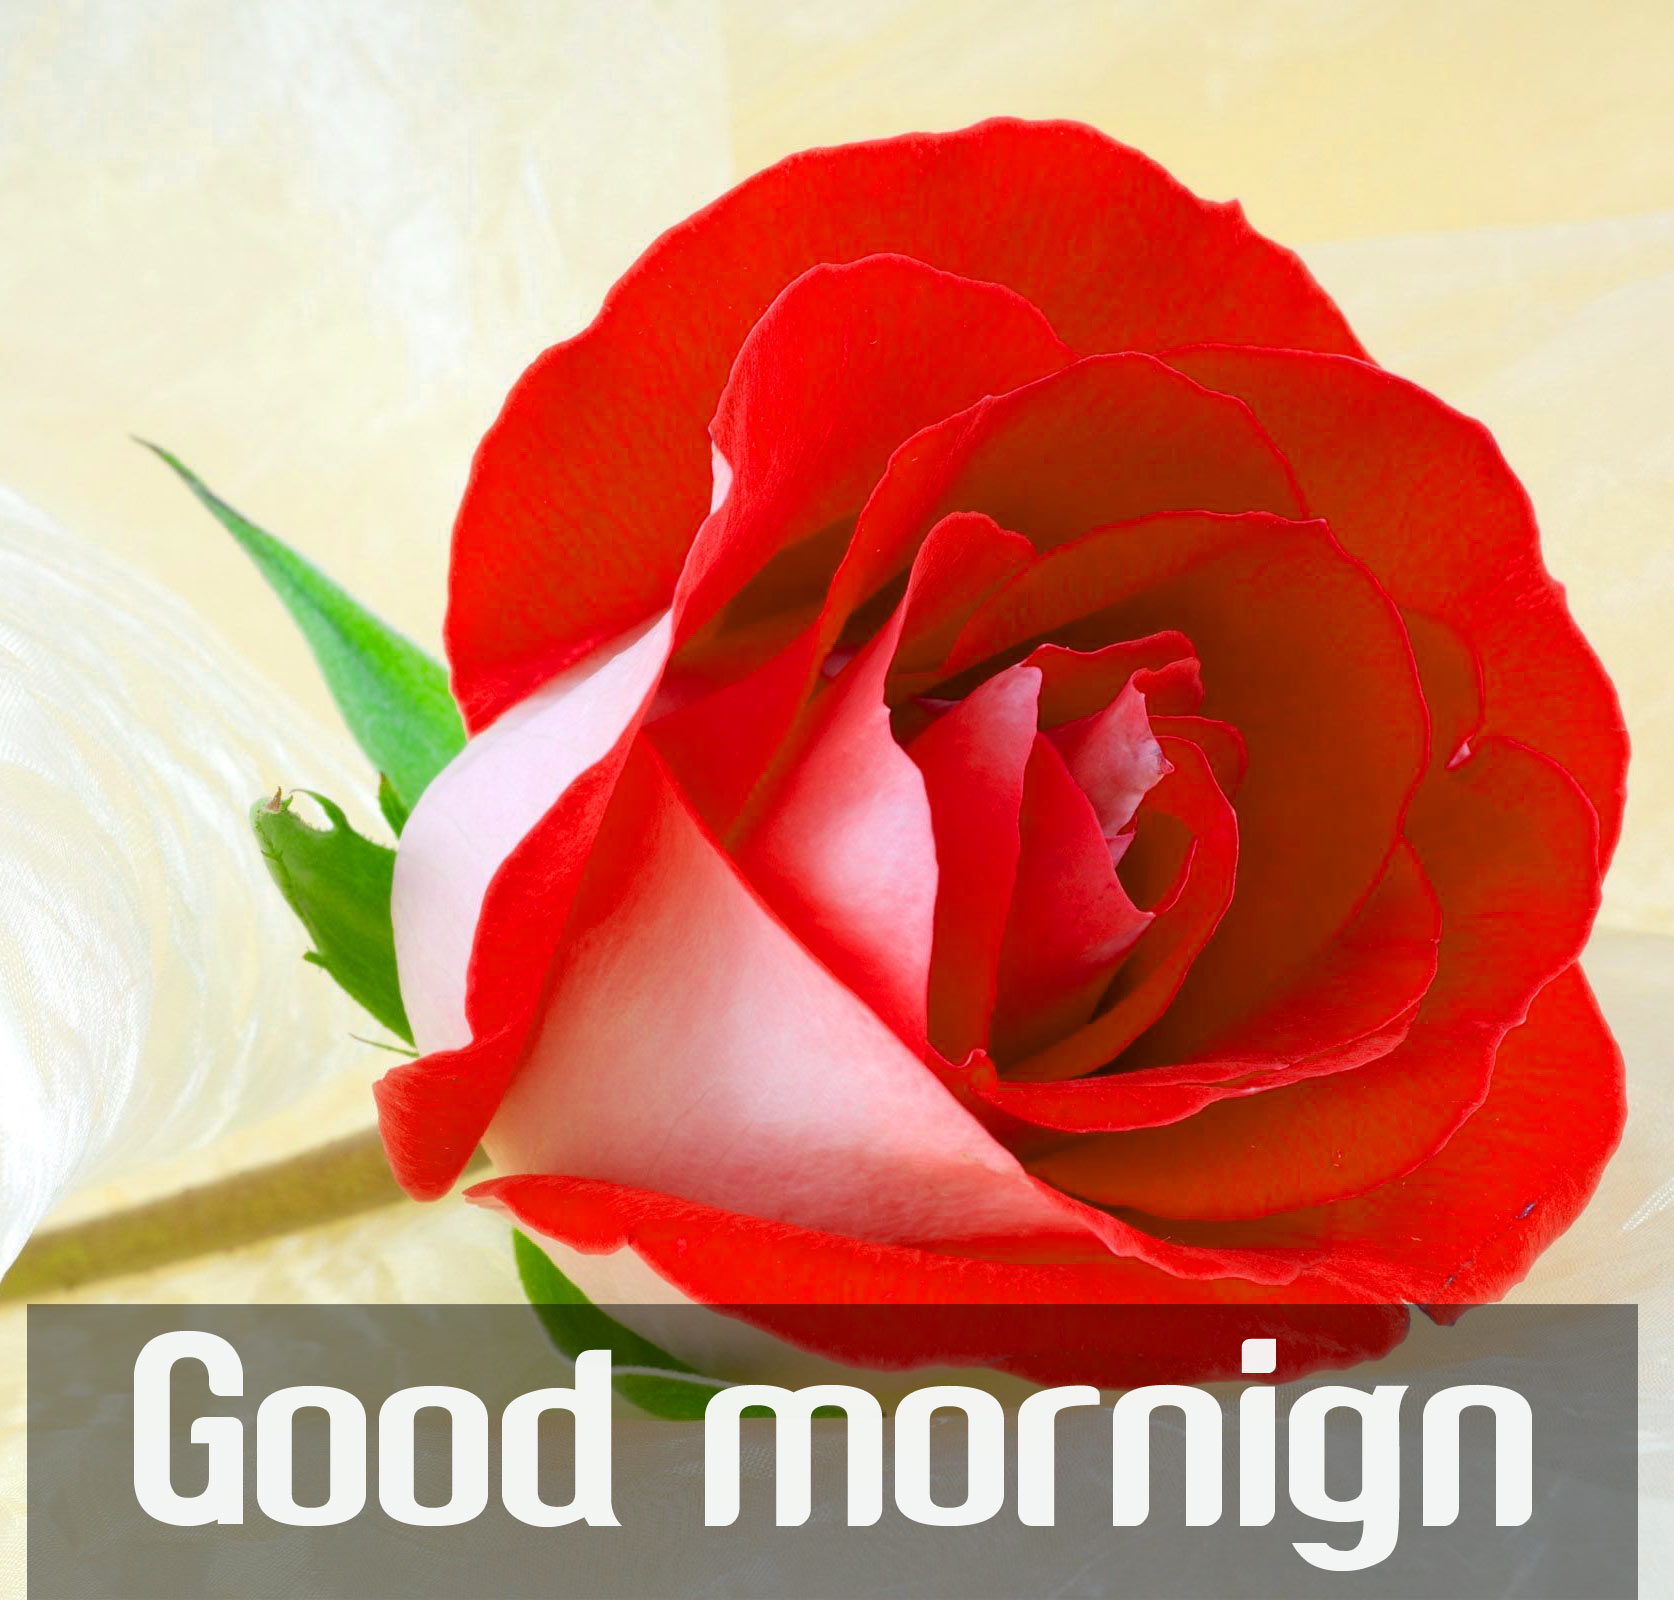 good morning wallpaper for whatsapp,garden roses,red,flower,petal,rose